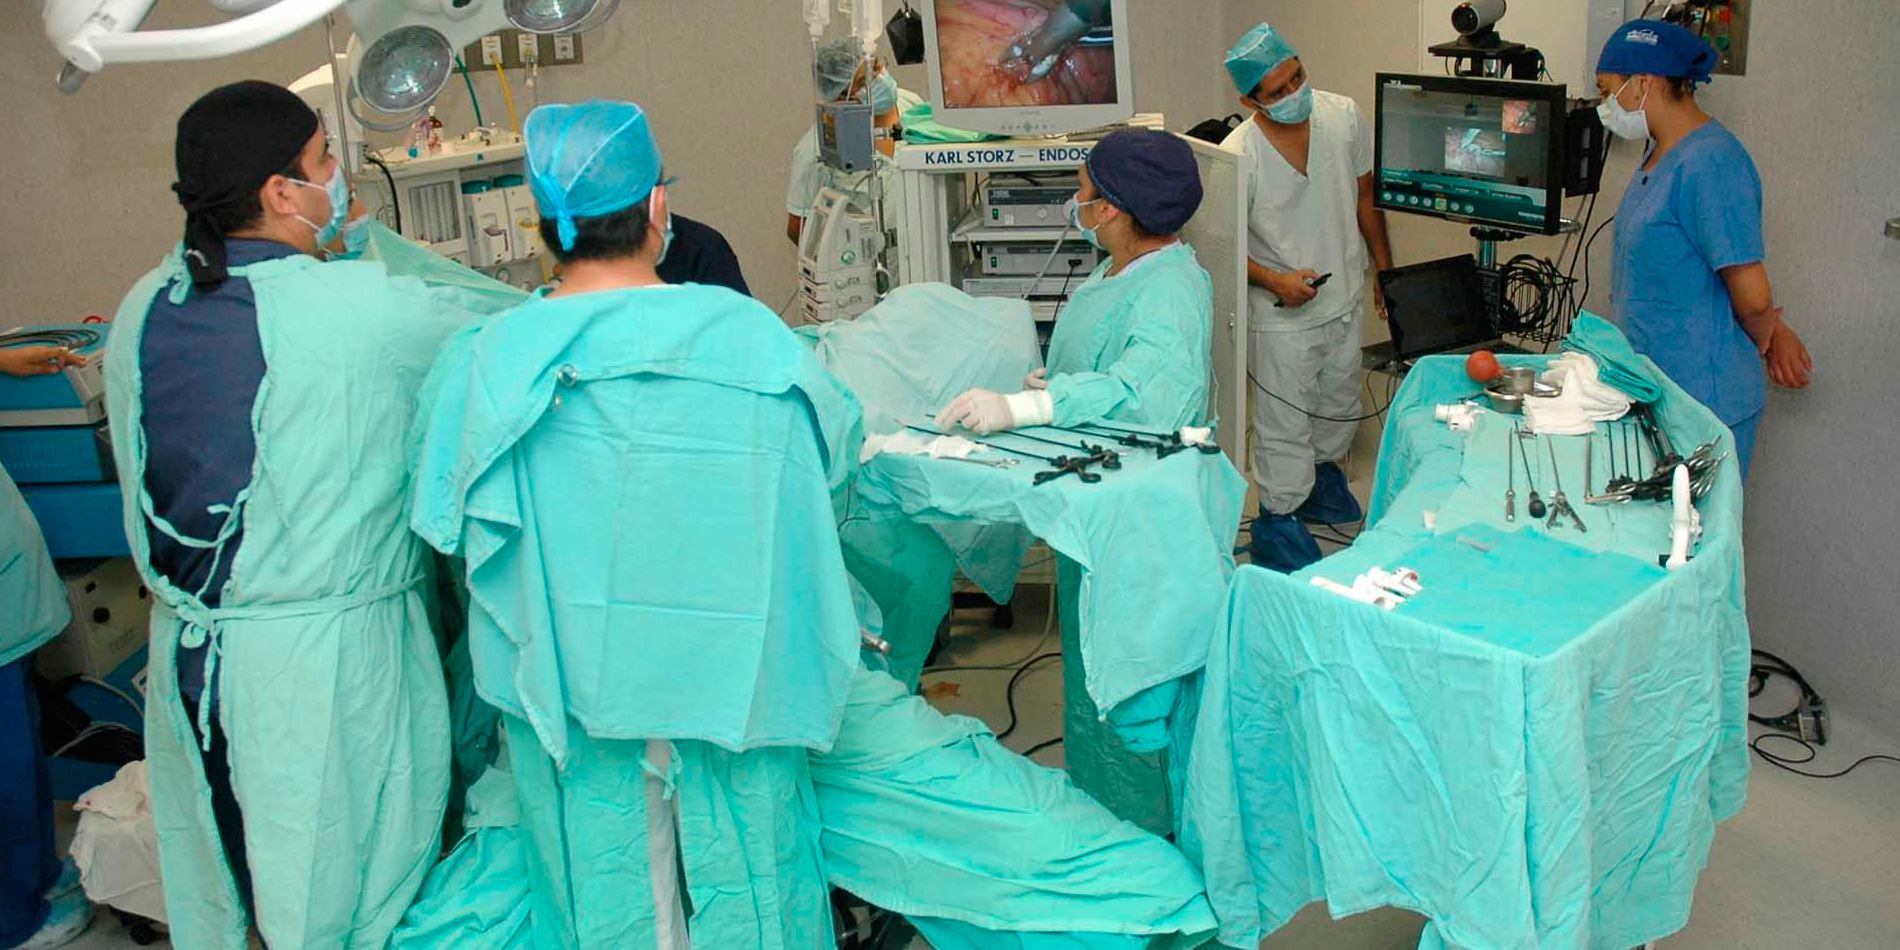  Médicos realizan siete trasplantes renales simultáneos a cuatro pacientes